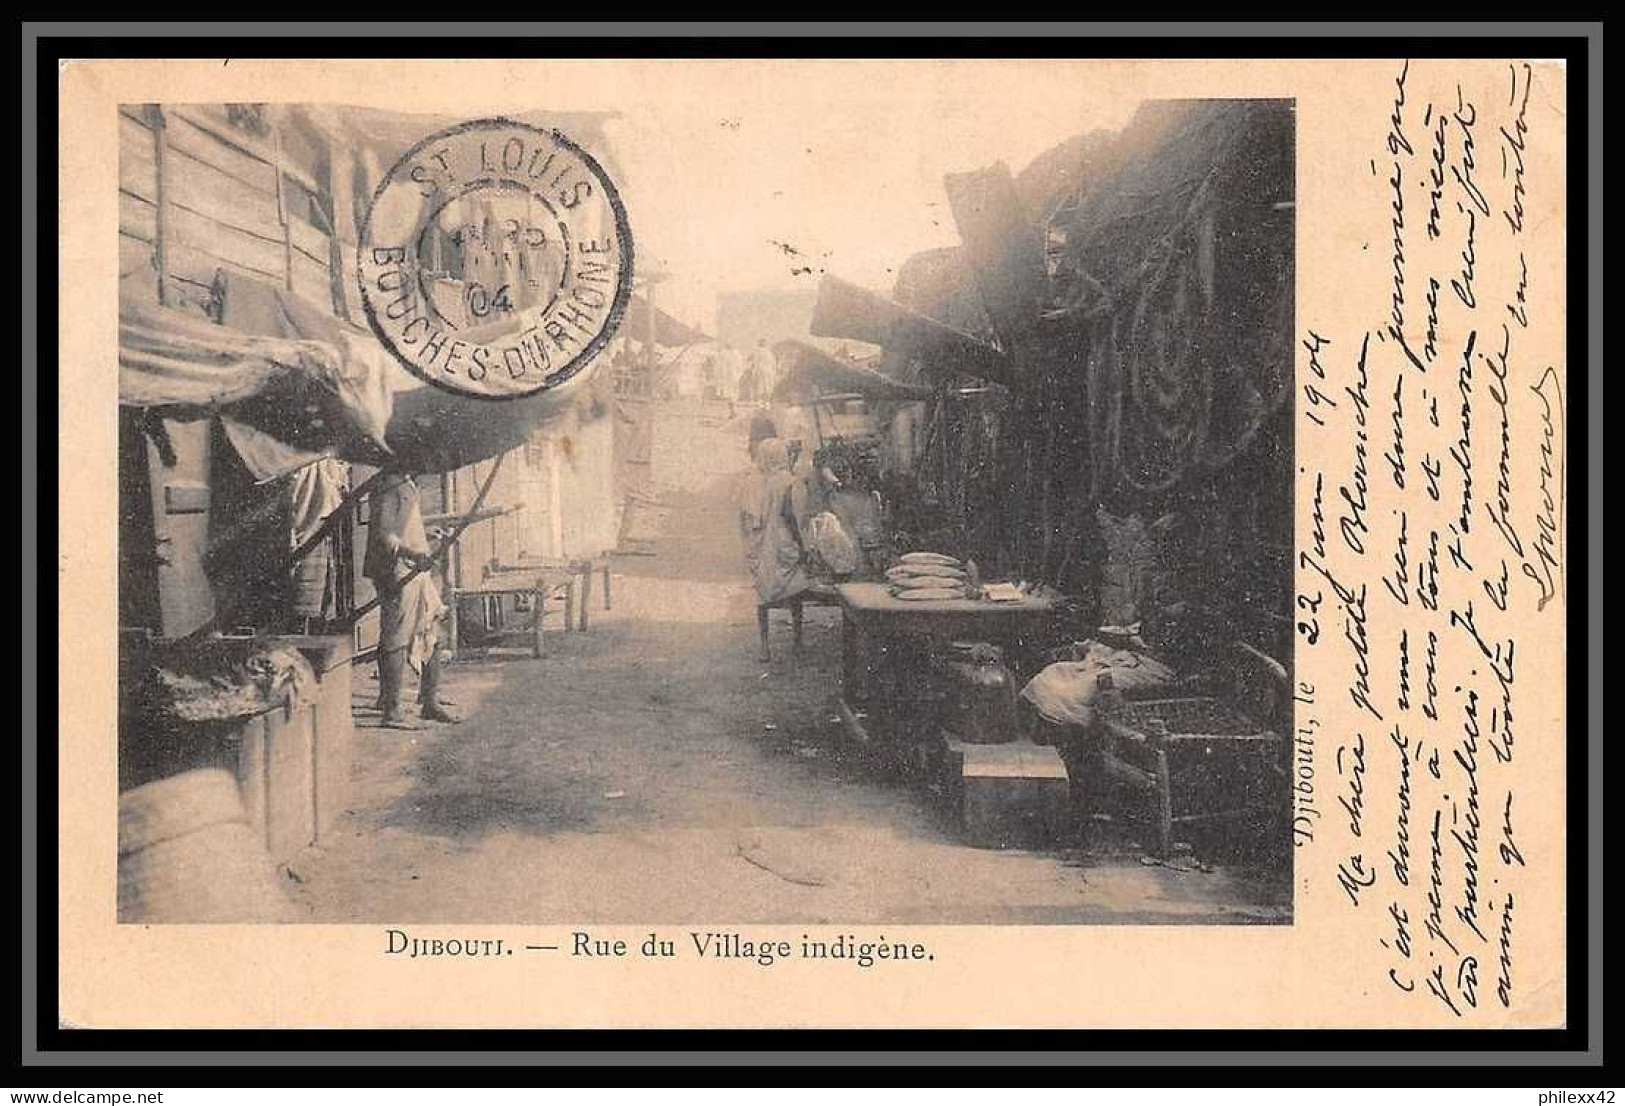 107442 Carte Postale (postcard) Bouches Du Rhone Djibouti Village Indigène Pour Marseille Saint Just 1904 - Covers & Documents